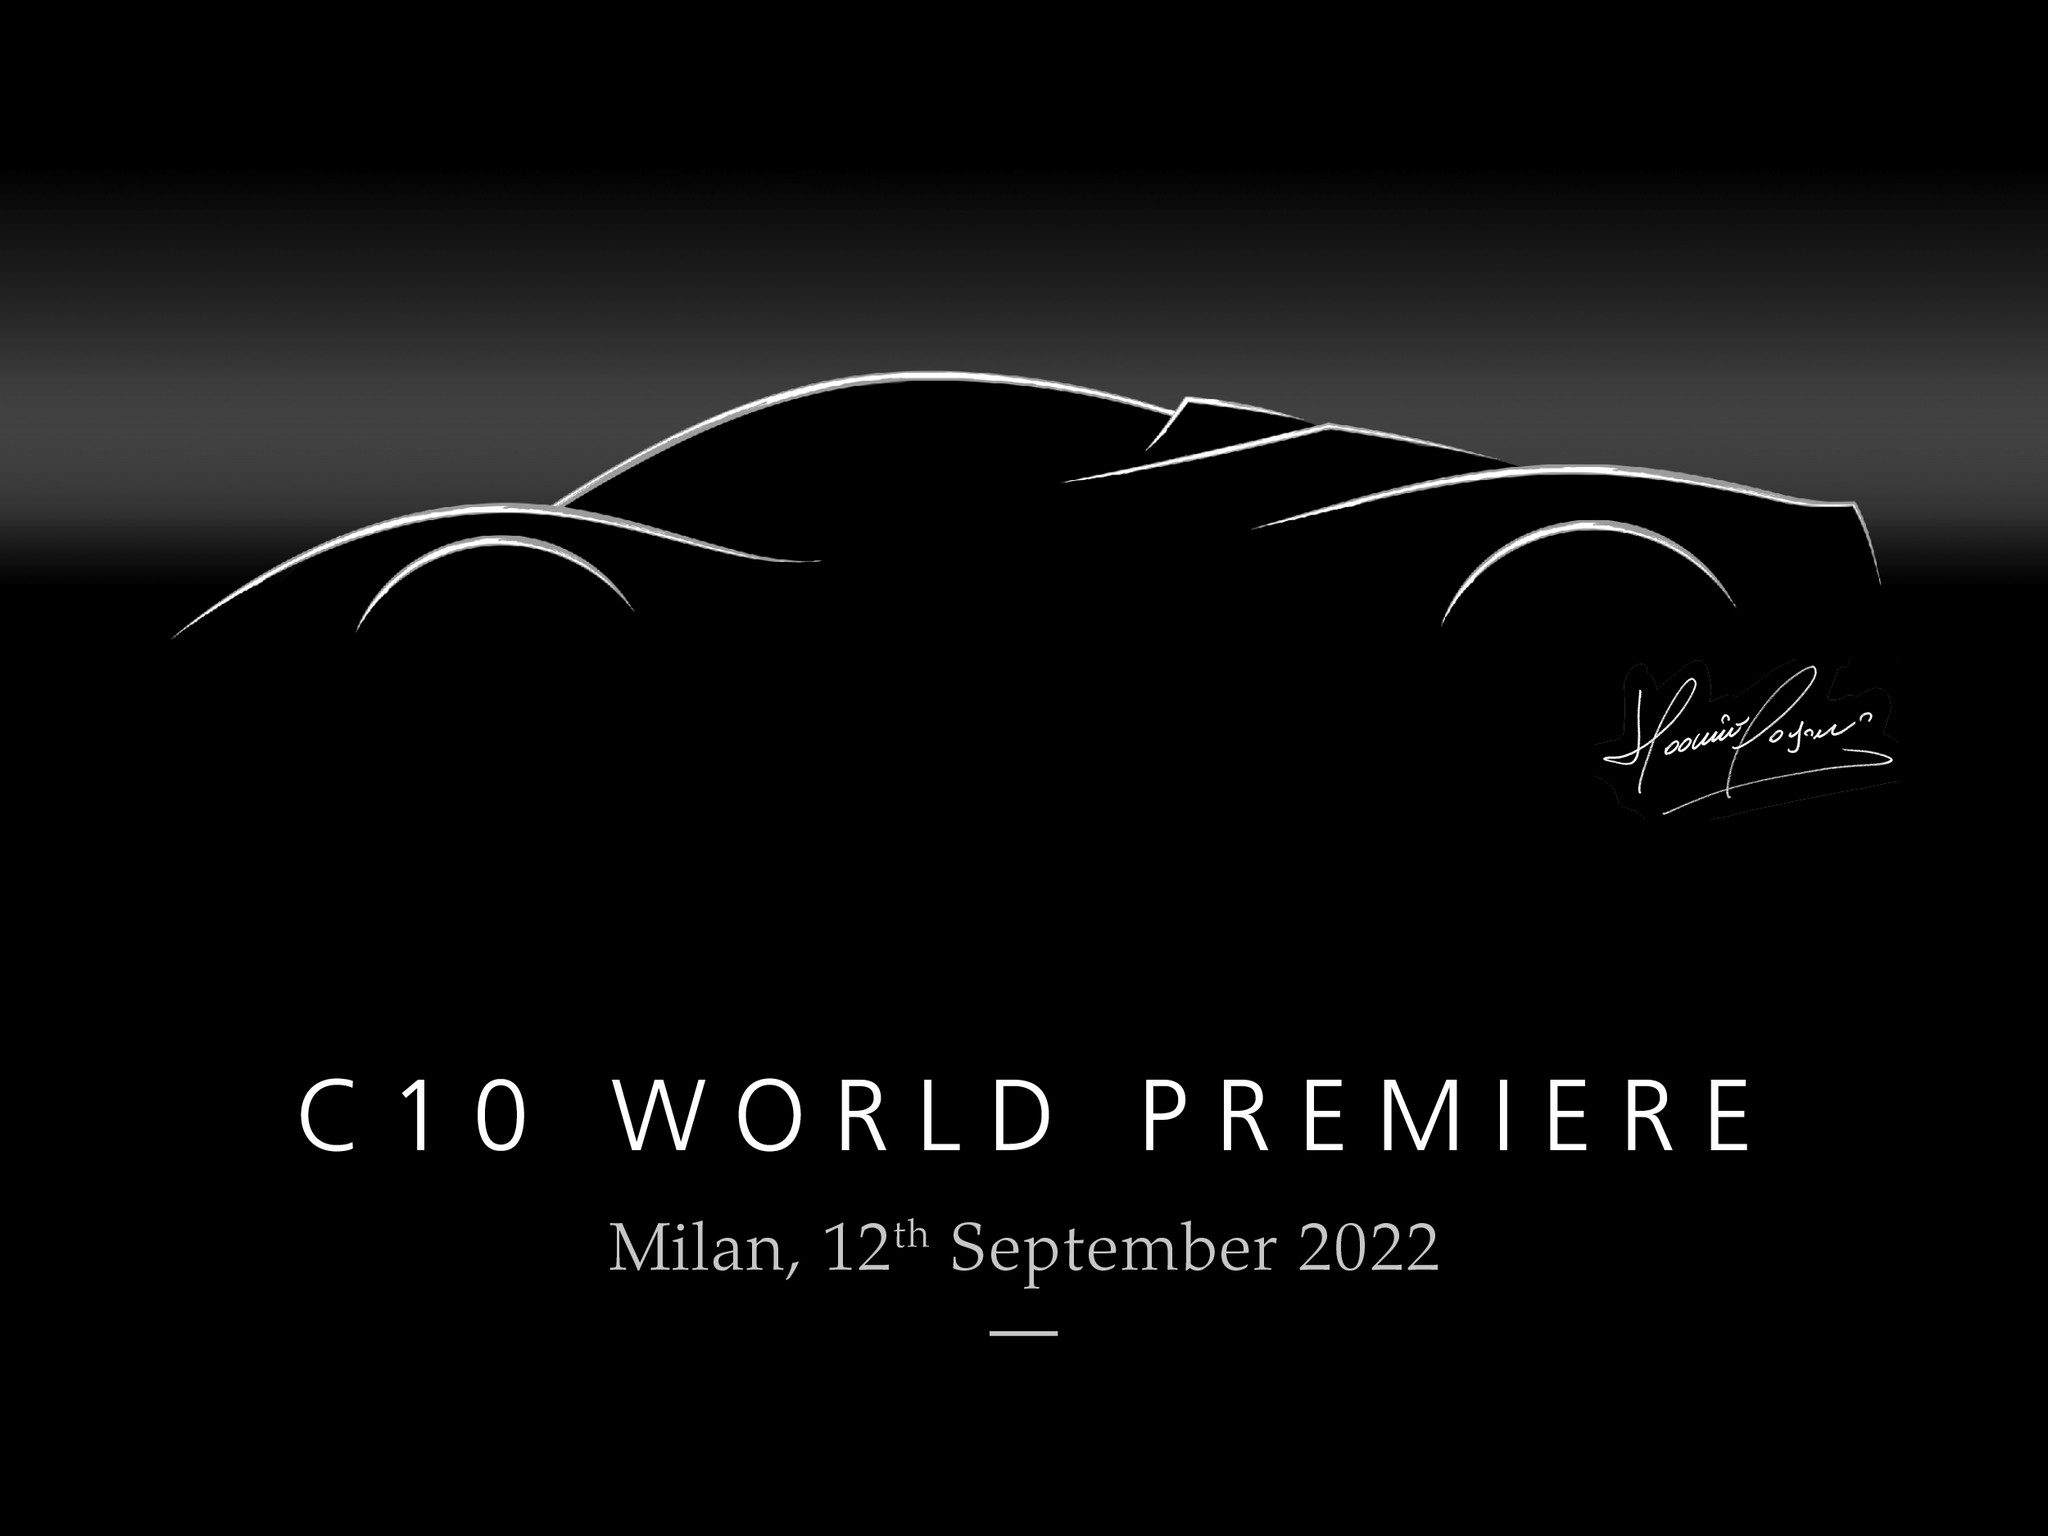 Pagani C10 debut set for September 12 in Milan